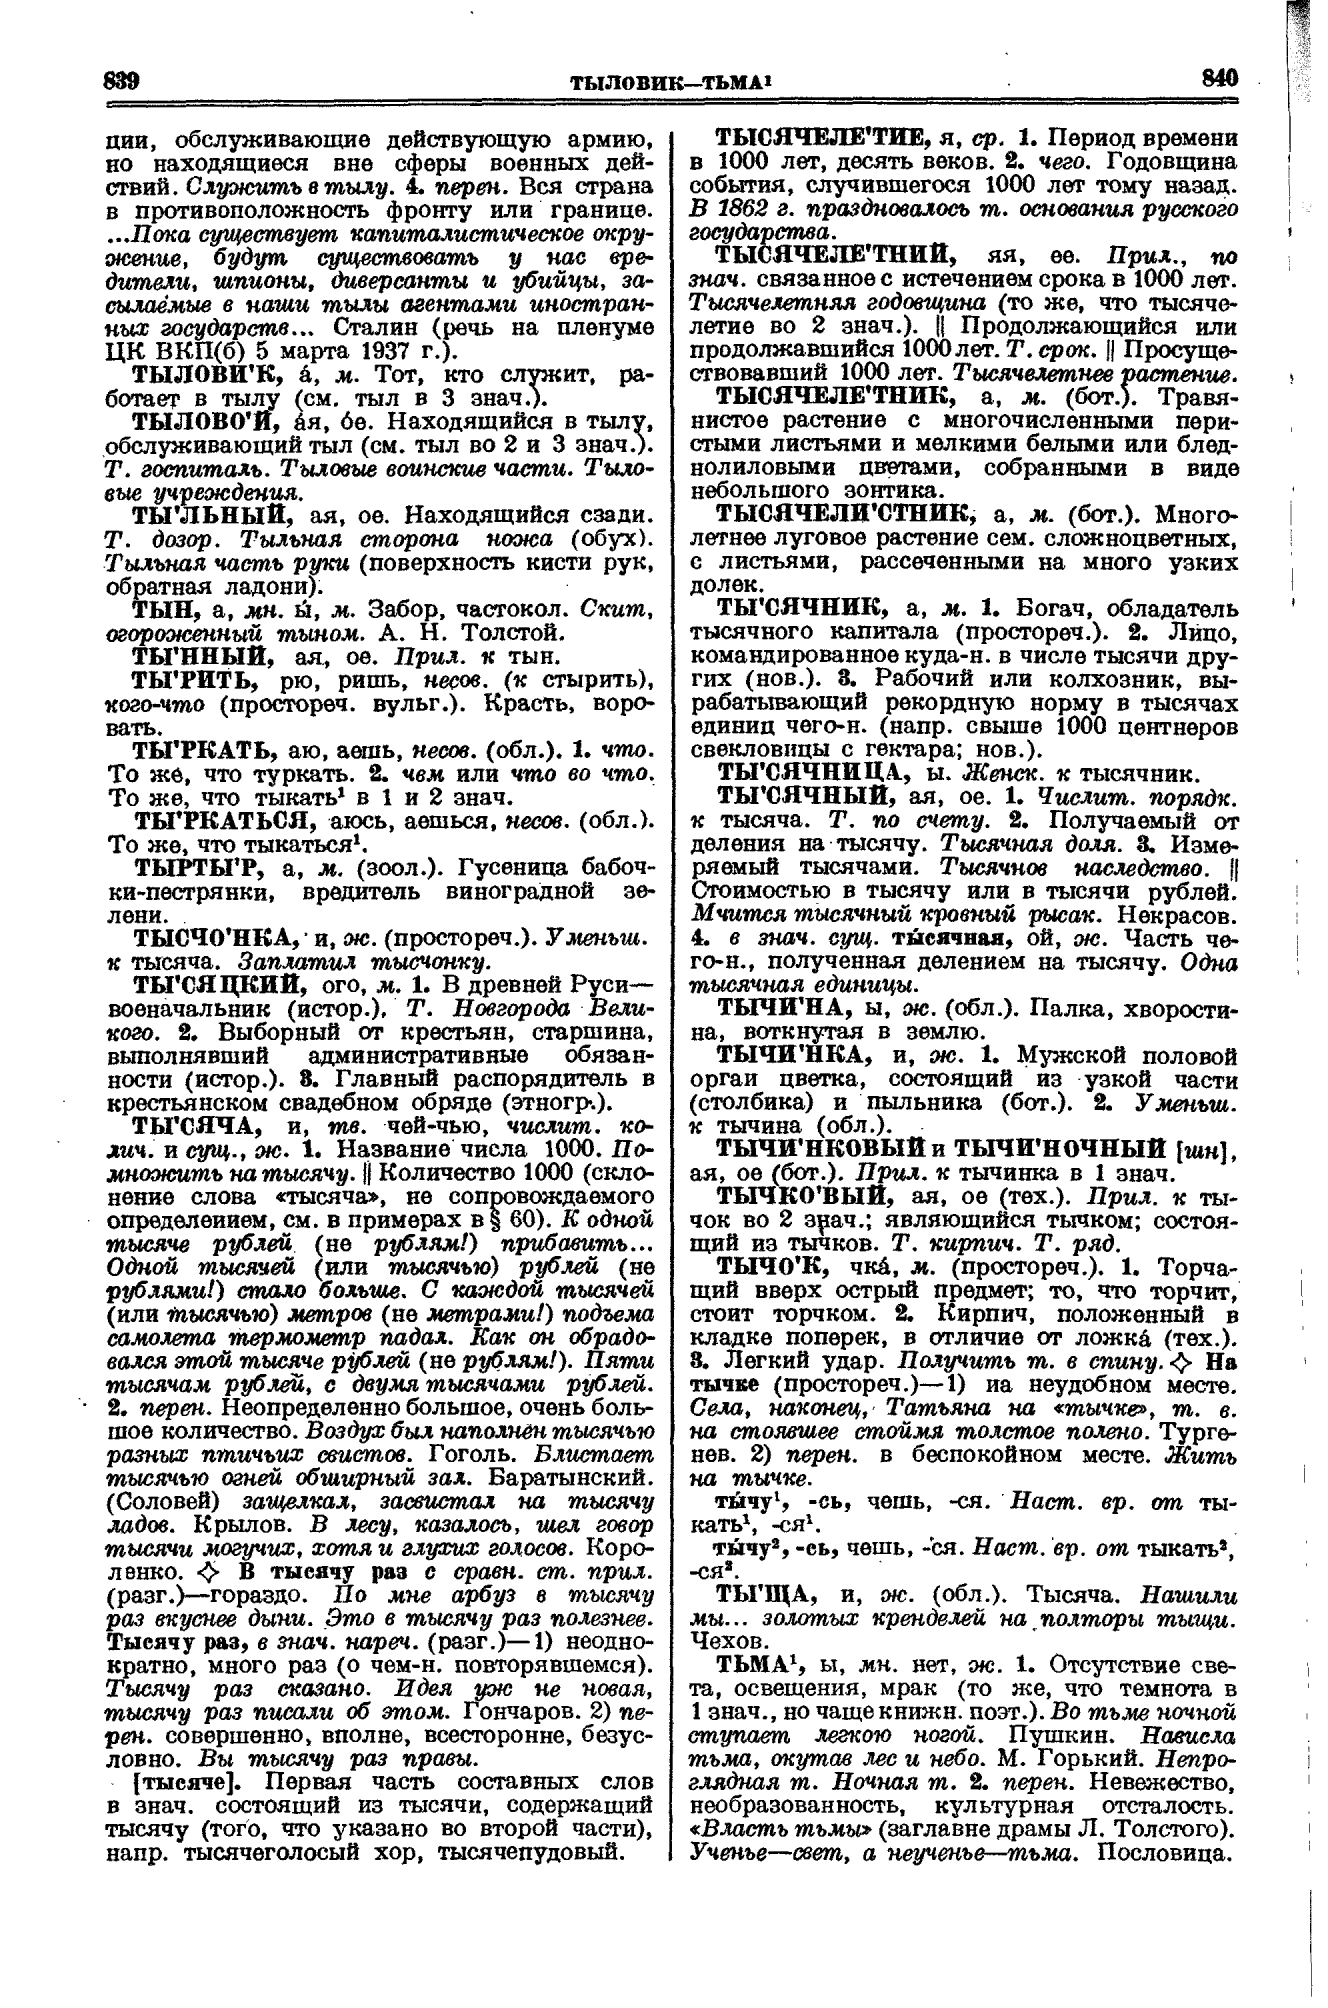 Фотокопия pdf / скан страницы 420 толкового словаря Ушакова (том 1)